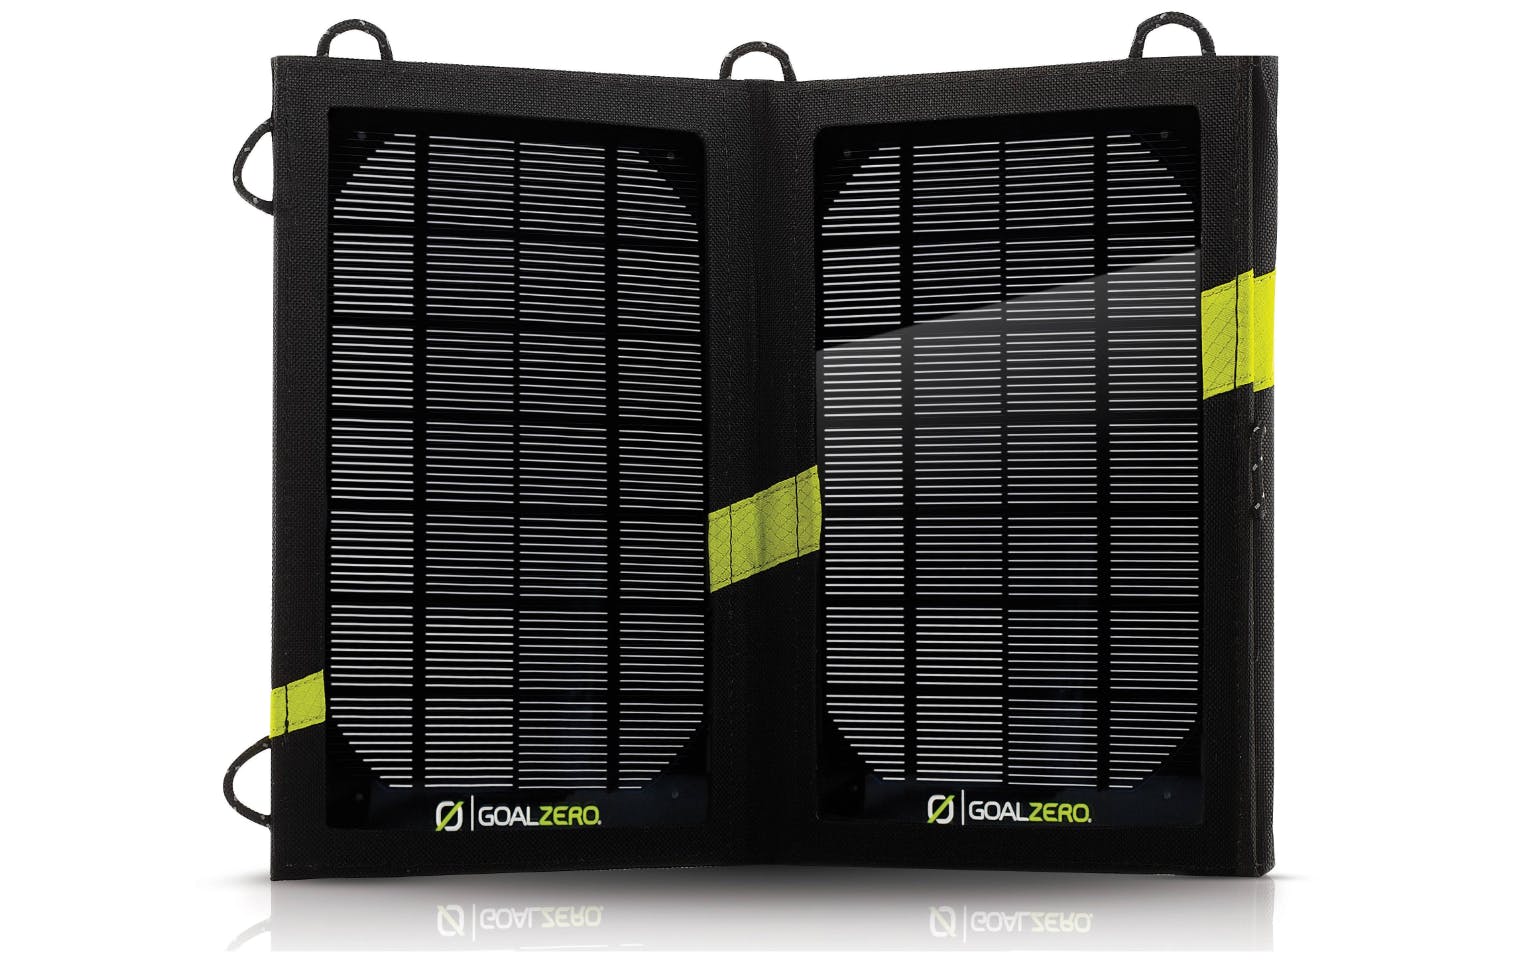 The Goal Zero Nomad 7 Solar Panel. 